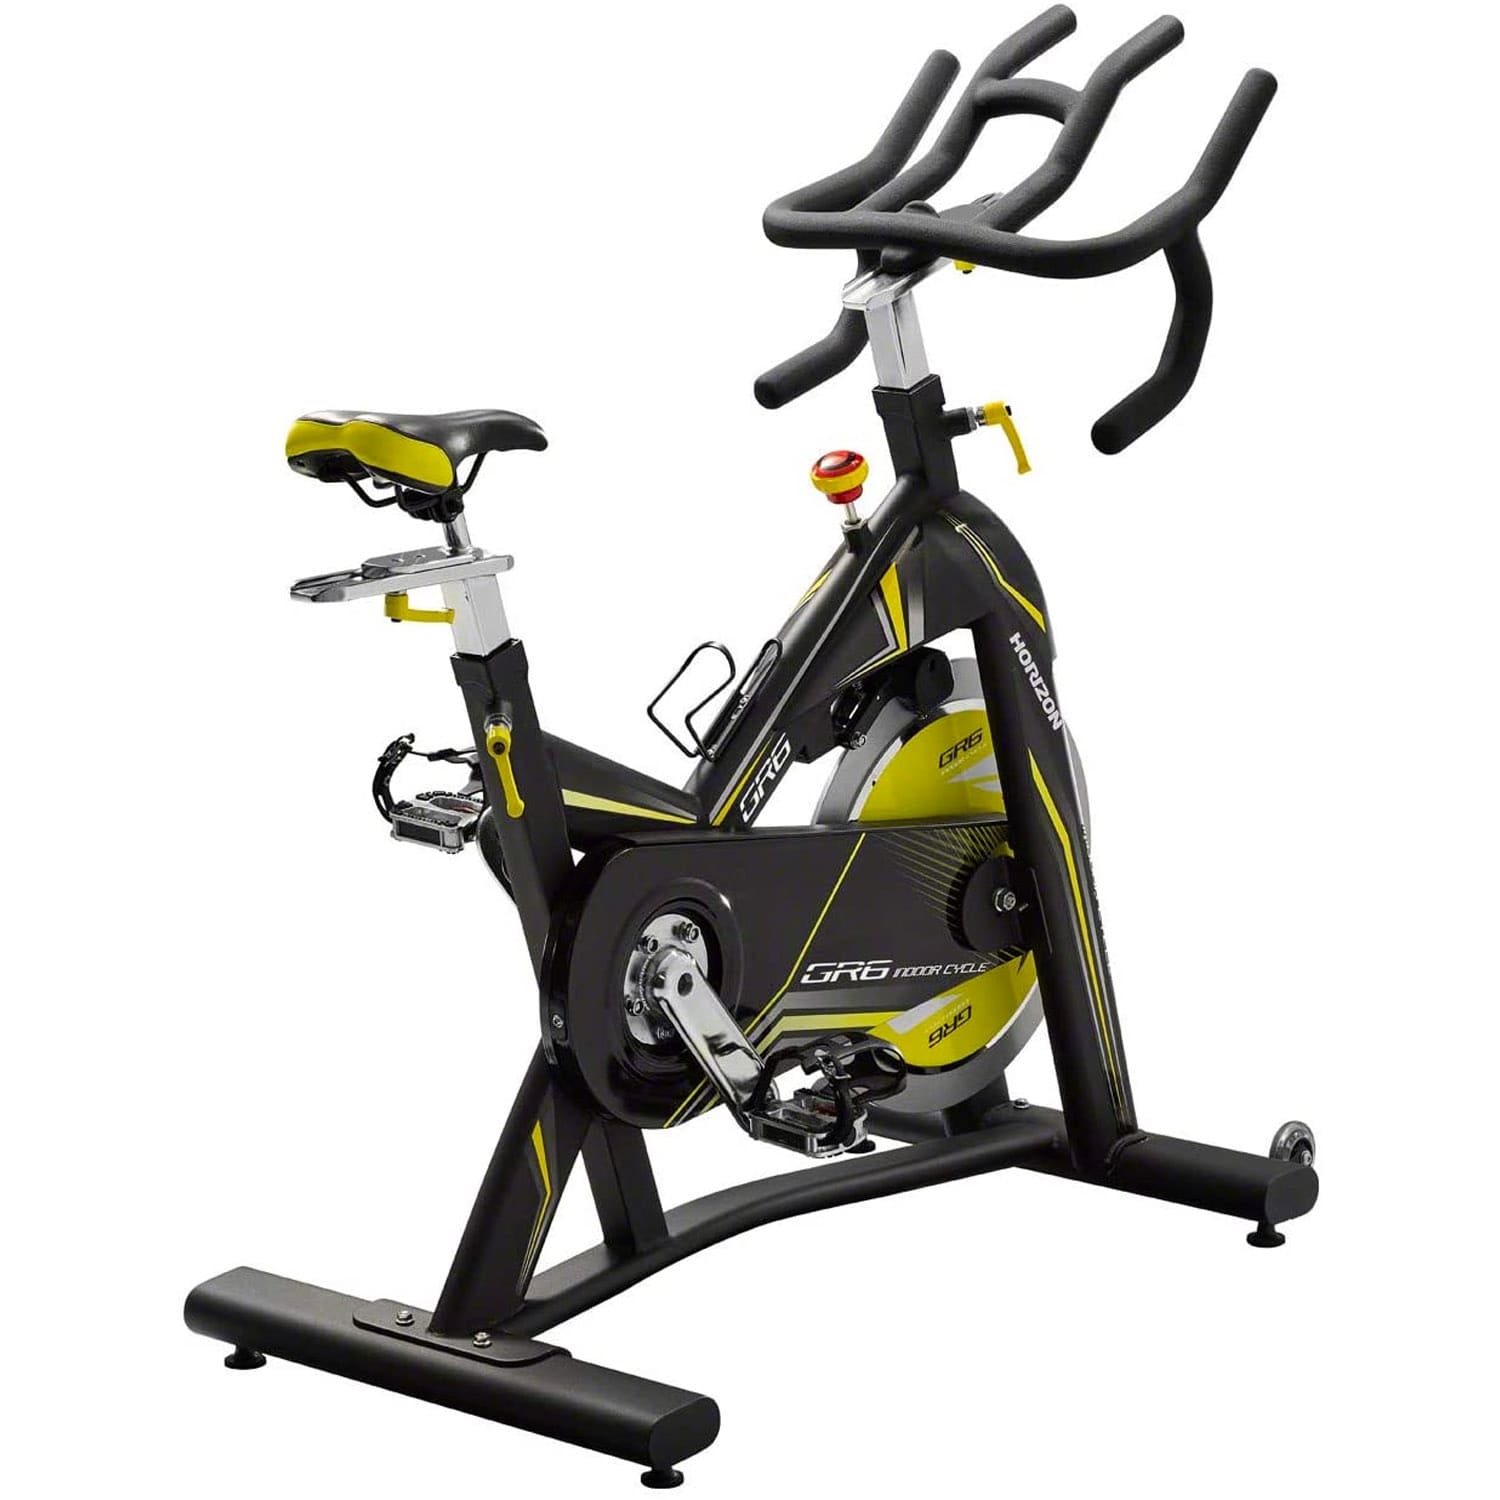 Horizon Fitness Indoor Cycle GR6